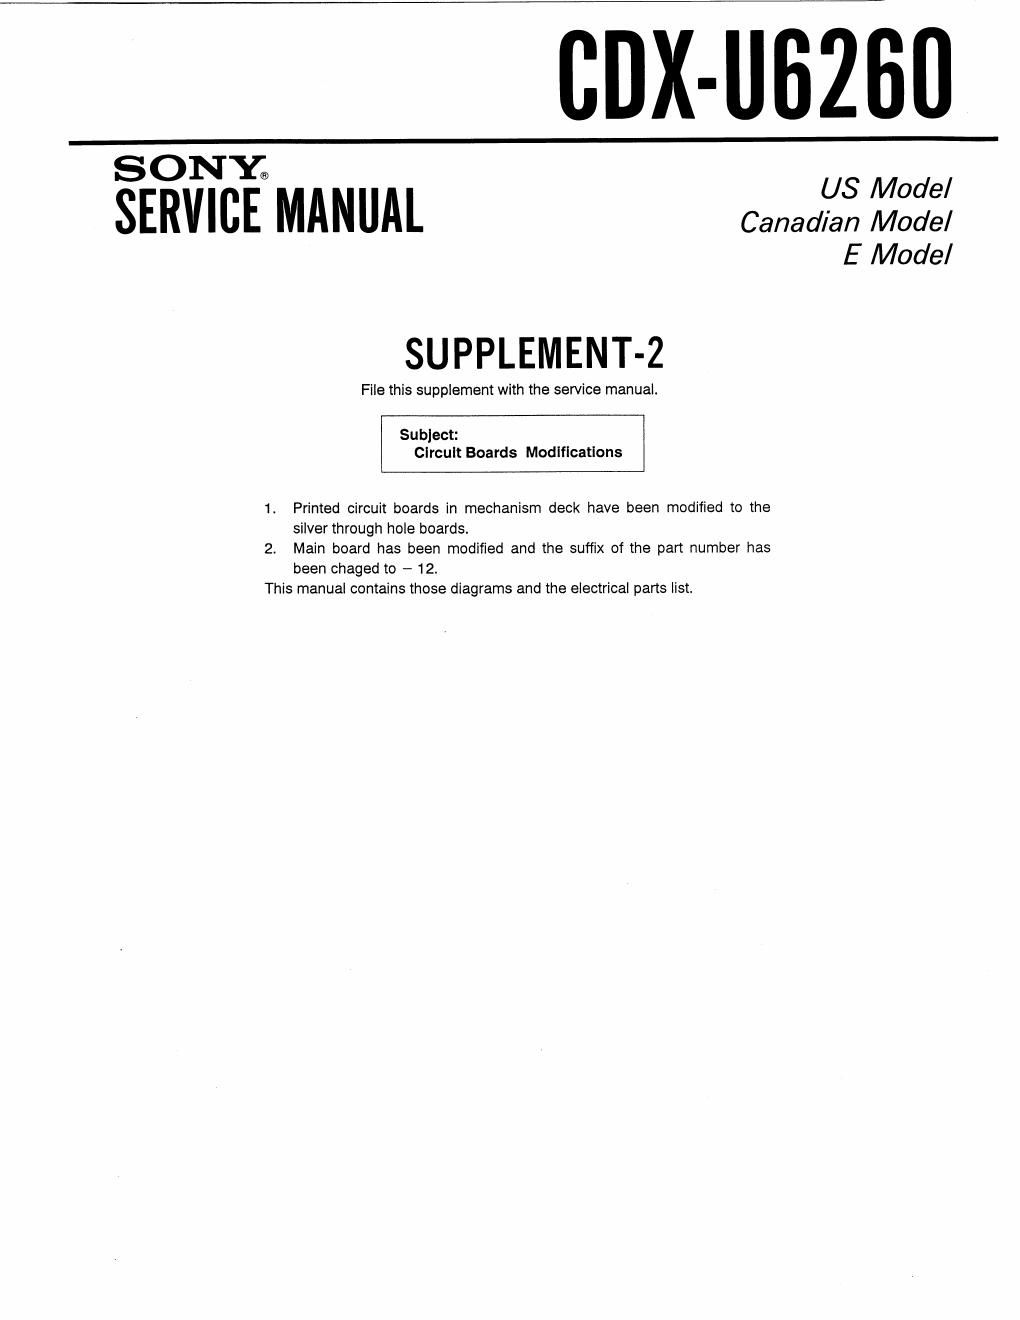 sony cdx u 6260 service manual